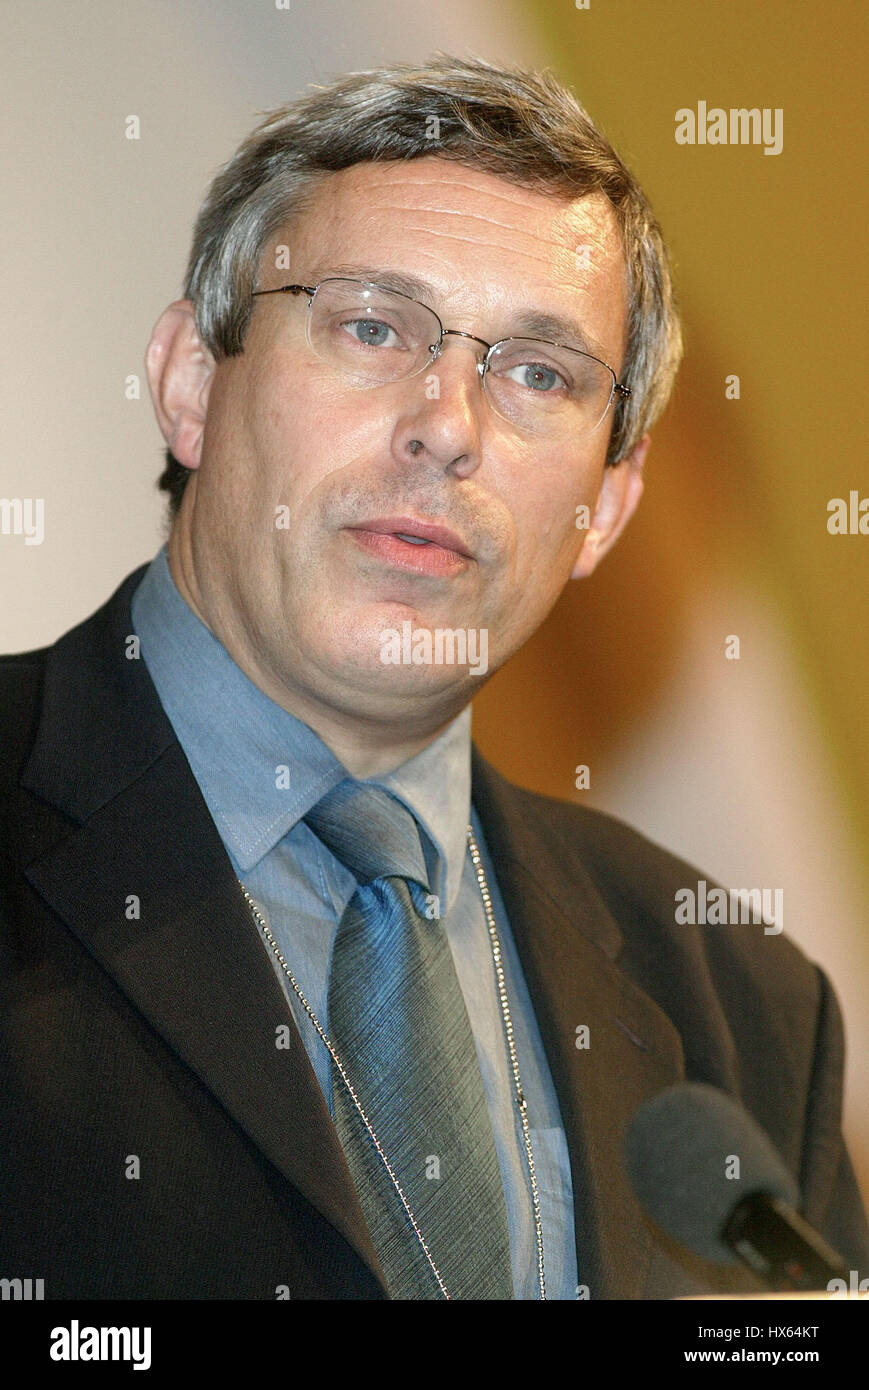 PAUL HOLMES MP Parti libéral démocrate 22 septembre 2003 Brighton, Angleterre Banque D'Images